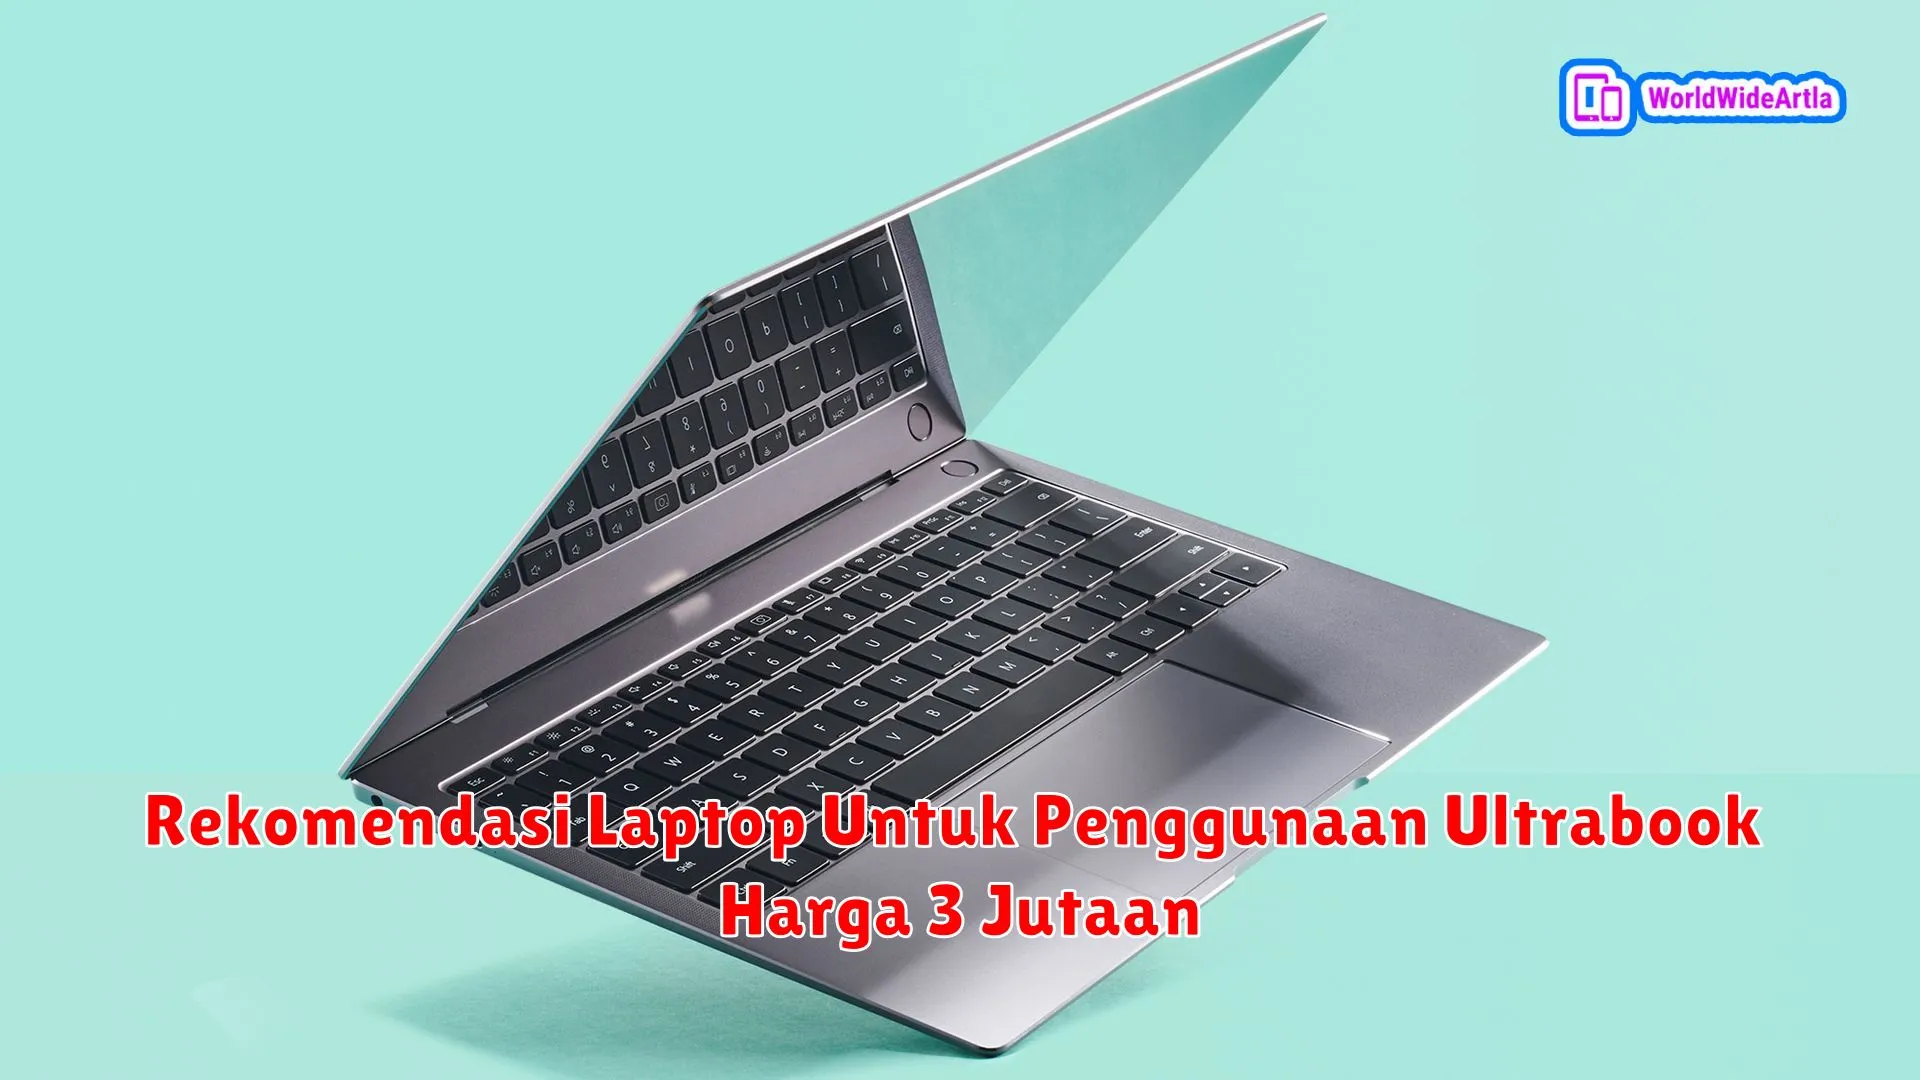 Rekomendasi Laptop Untuk Penggunaan Ultrabook Harga 3 Jutaan